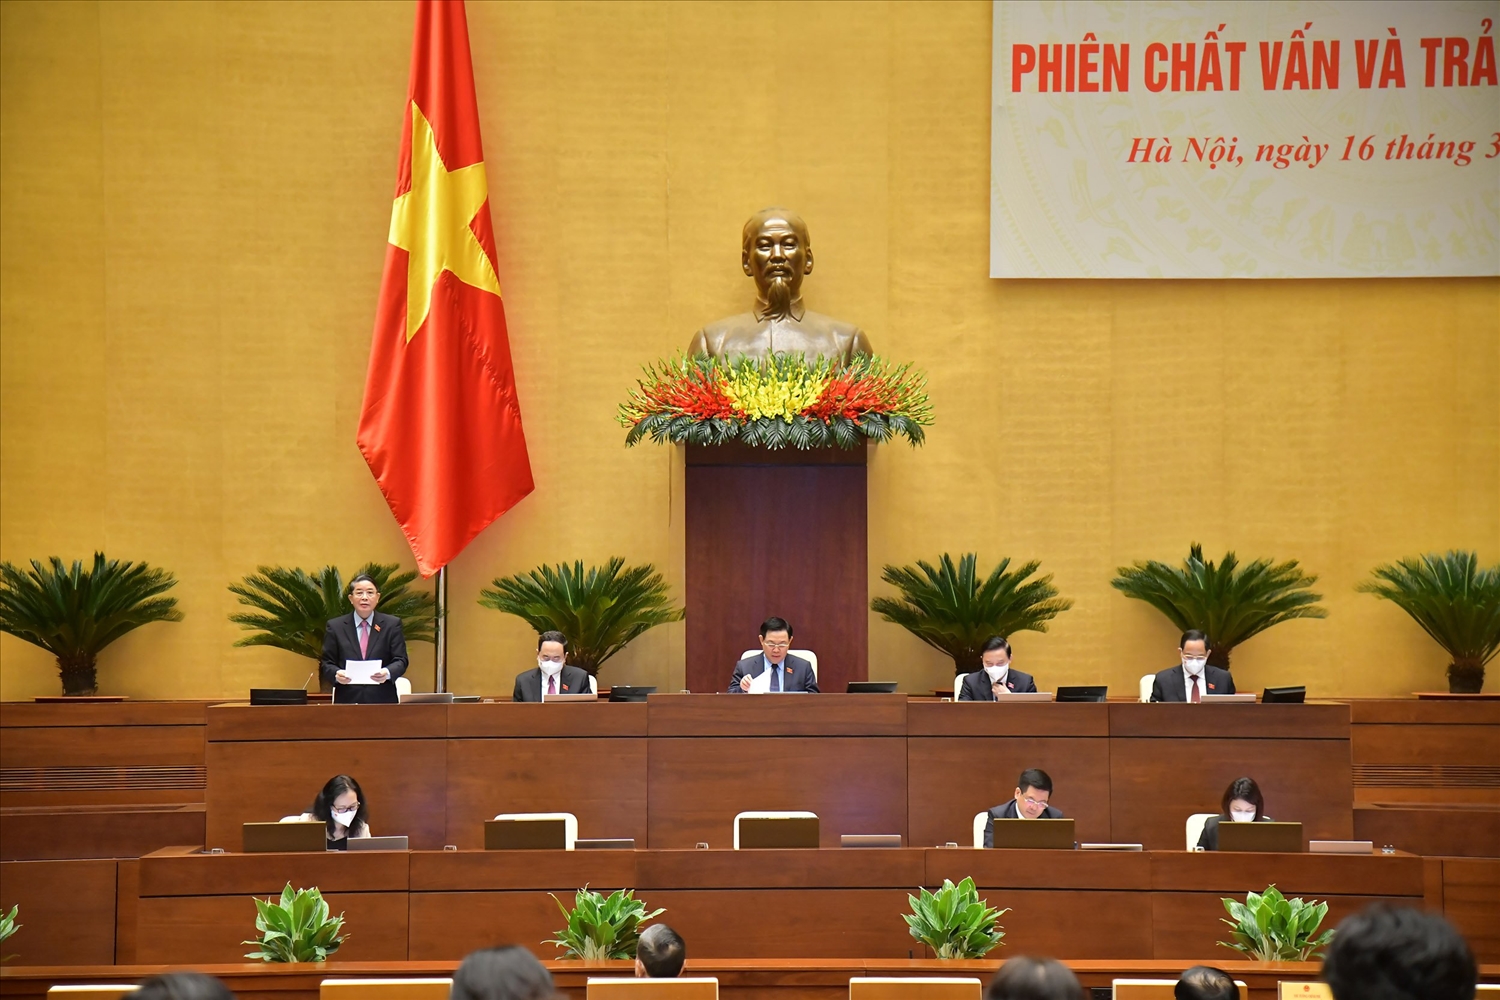 Phó Chủ tịch Quốc hội Nguyễn Đức Hải điều hành nội dung Phiên họp sáng ngày 16/3. Ảnh BQH